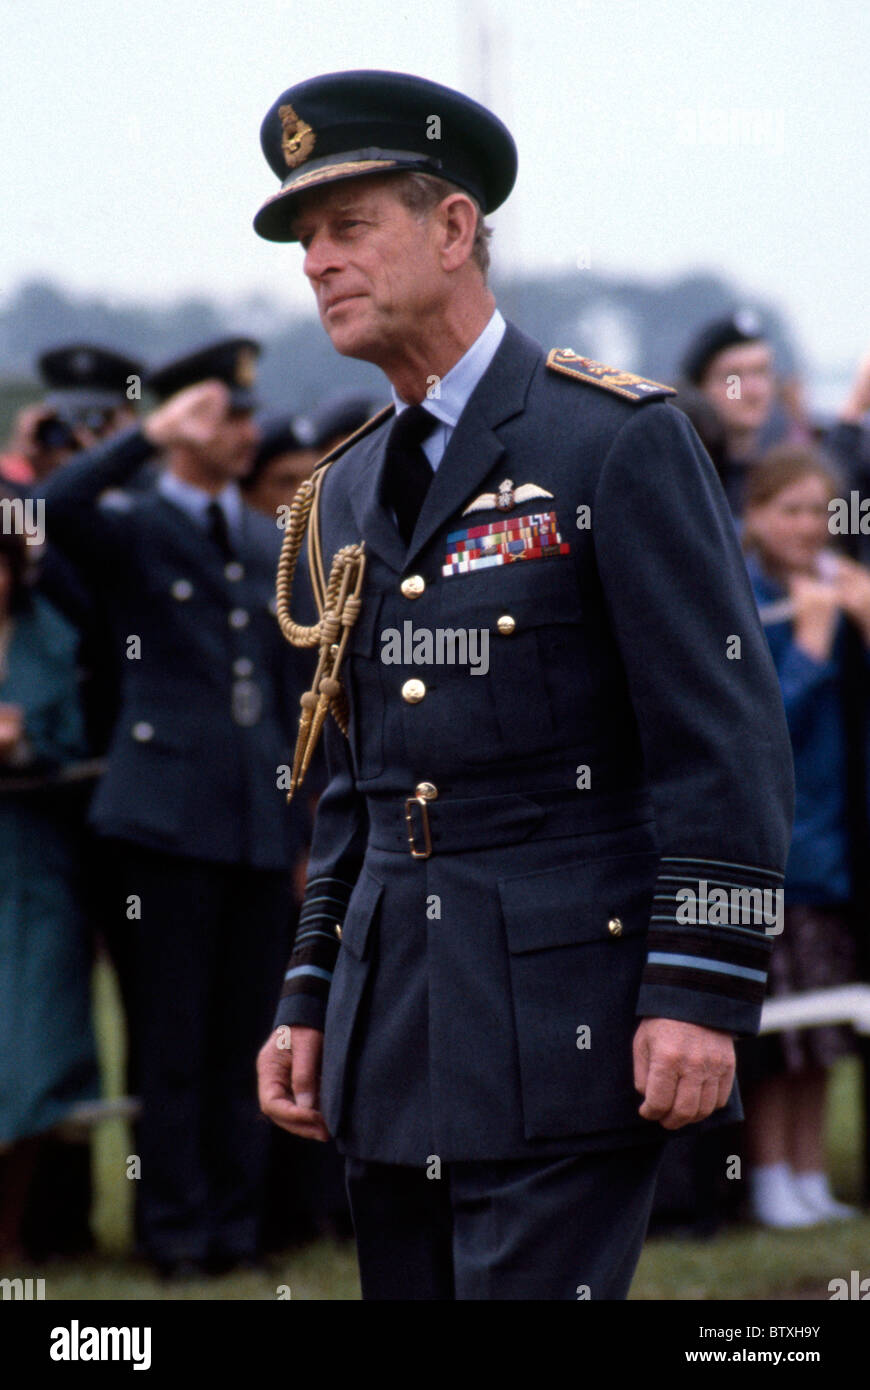 WITTERING, REINO UNIDO - 21 de junio: el Príncipe Philip, en una visita a RAF Wittering el 21 de junio de 1982. Foto de stock